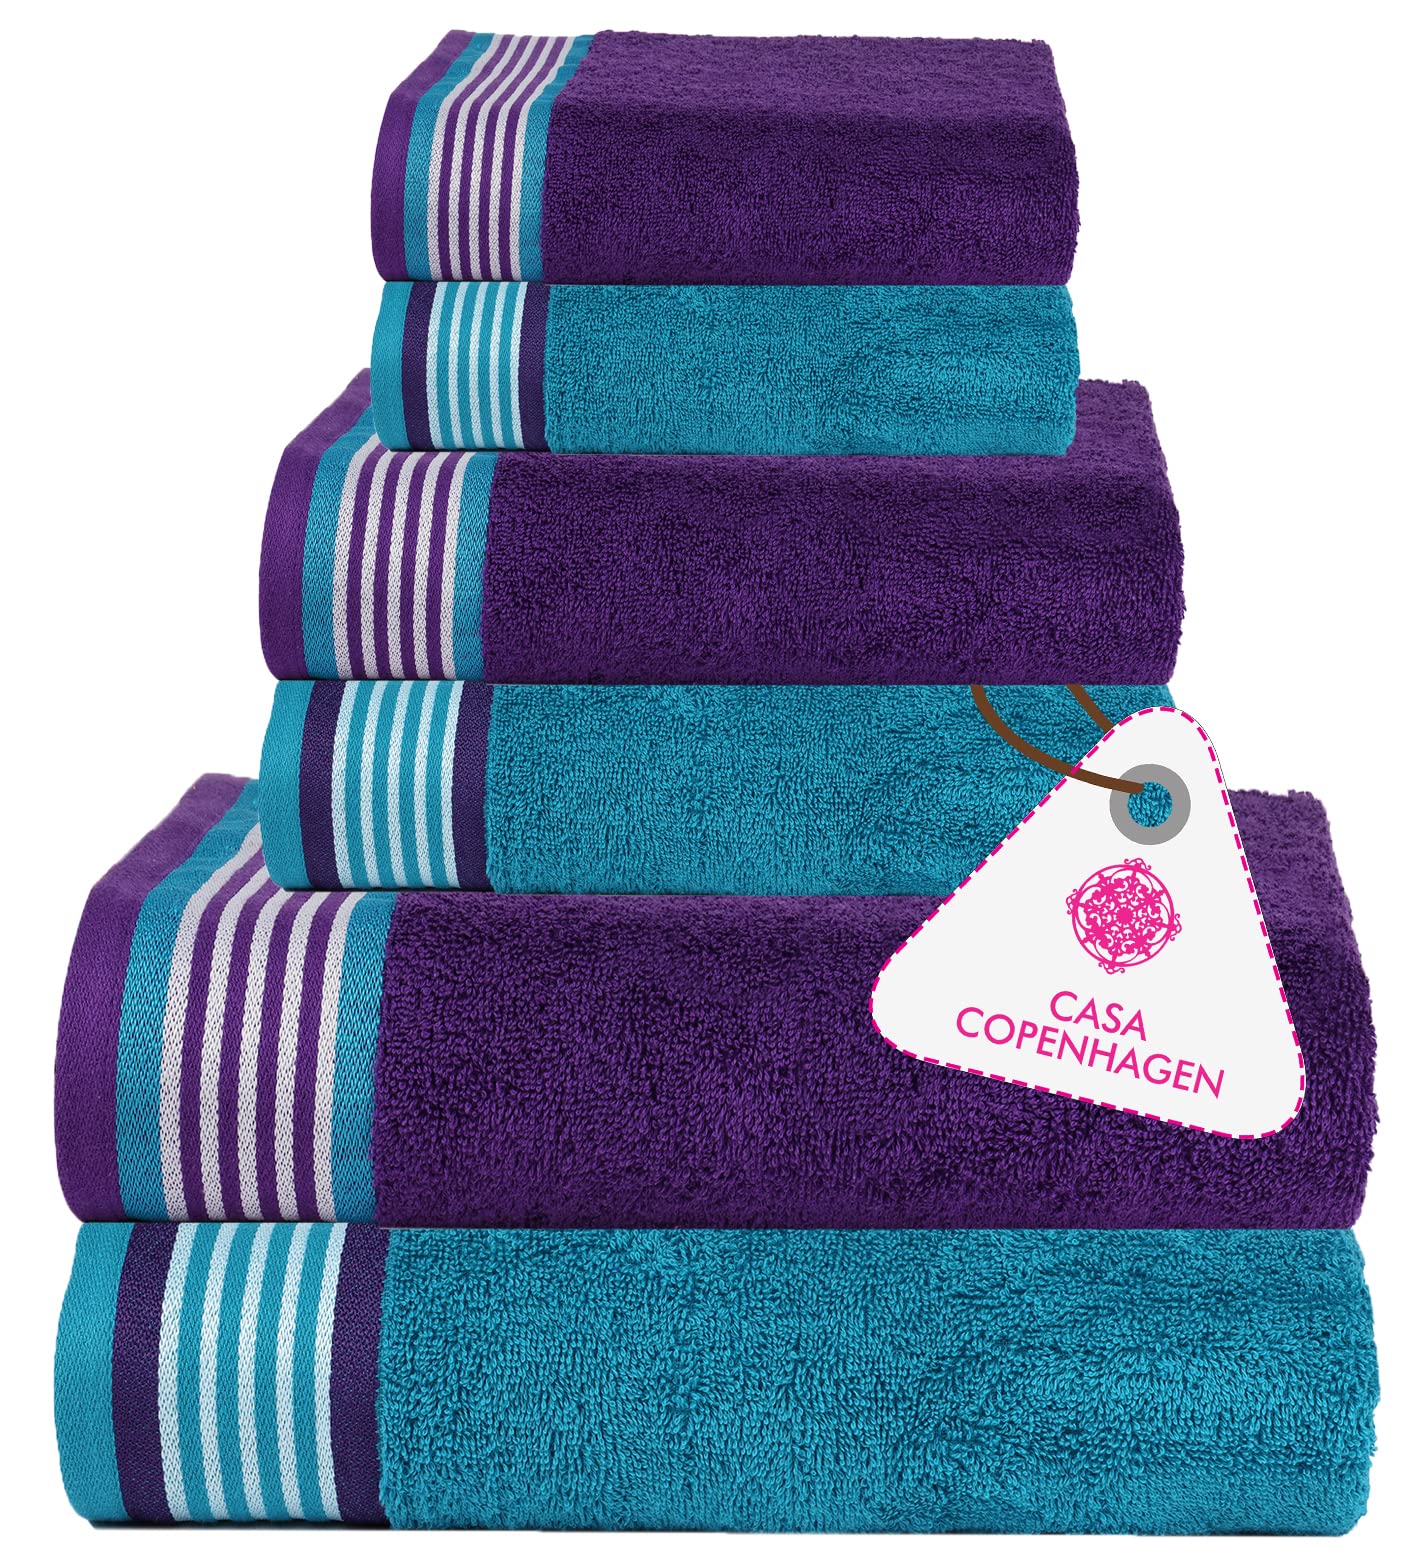 CASA COPENHAGEN Designed in Denmark 550 GSM 2 Large Bath Towels 2 Large  Hand Towels 2 Washcloths Super Soft Egyptian Cotton 6 Towels Set for  Bathroom Kitchen & Shower - Violet Indigo & Teal Green